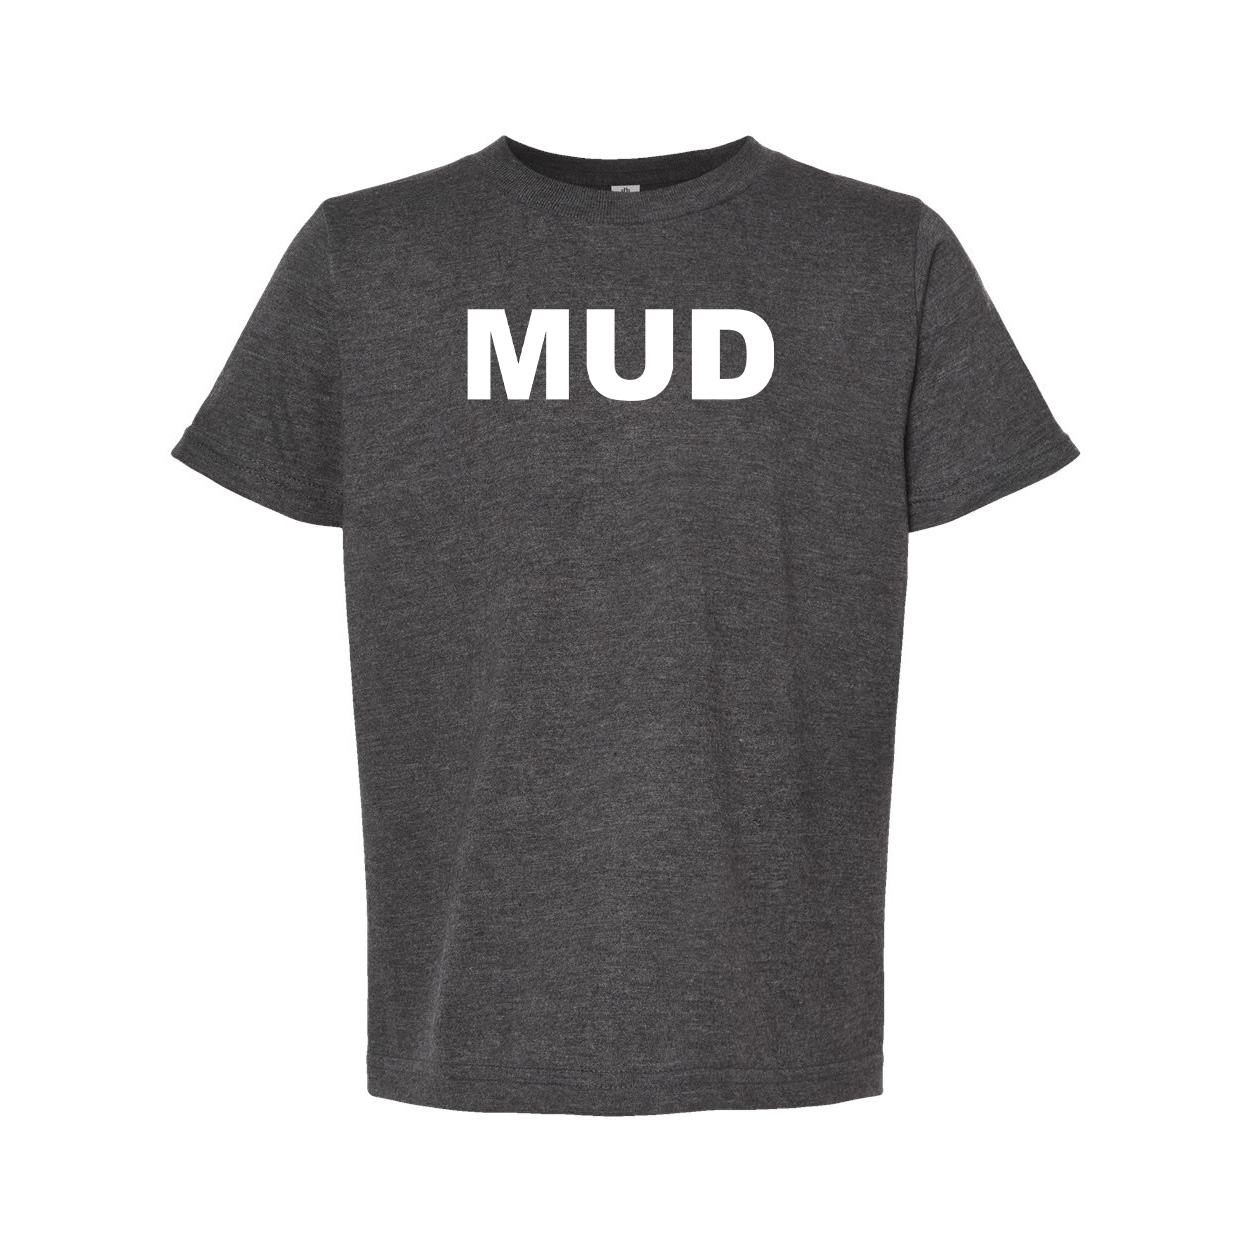 Mud Brand Logo Classic Youth T-Shirt Dark Heather Gray